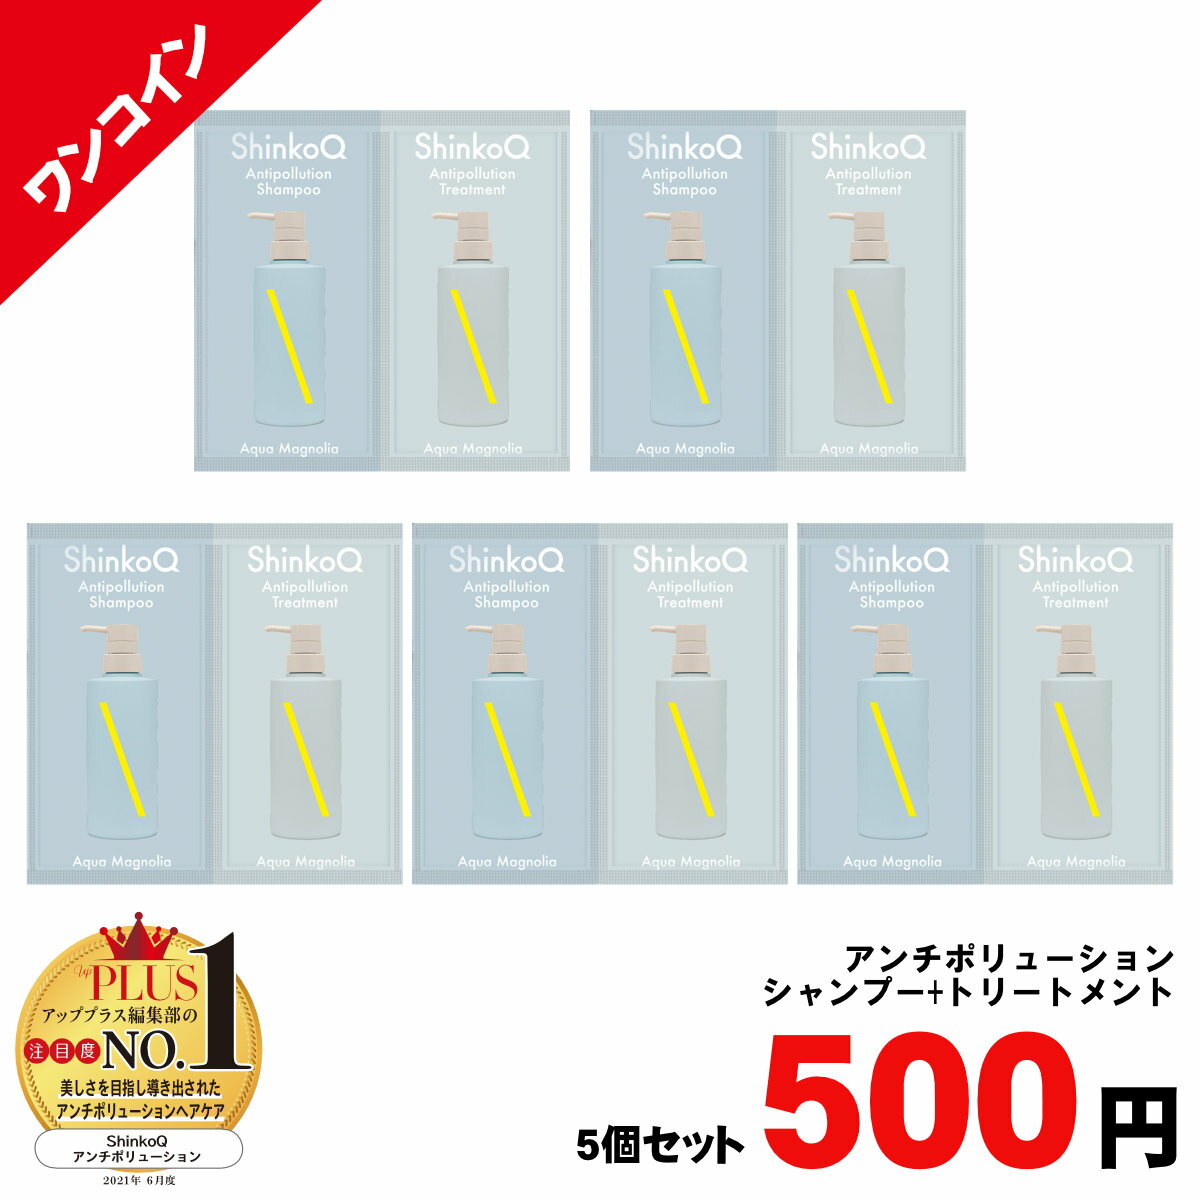 500円シンコキュウ 1回分パウチ(AM)×5個(アンチポリューションシャンプー+トリートメント)(6054277-set1)